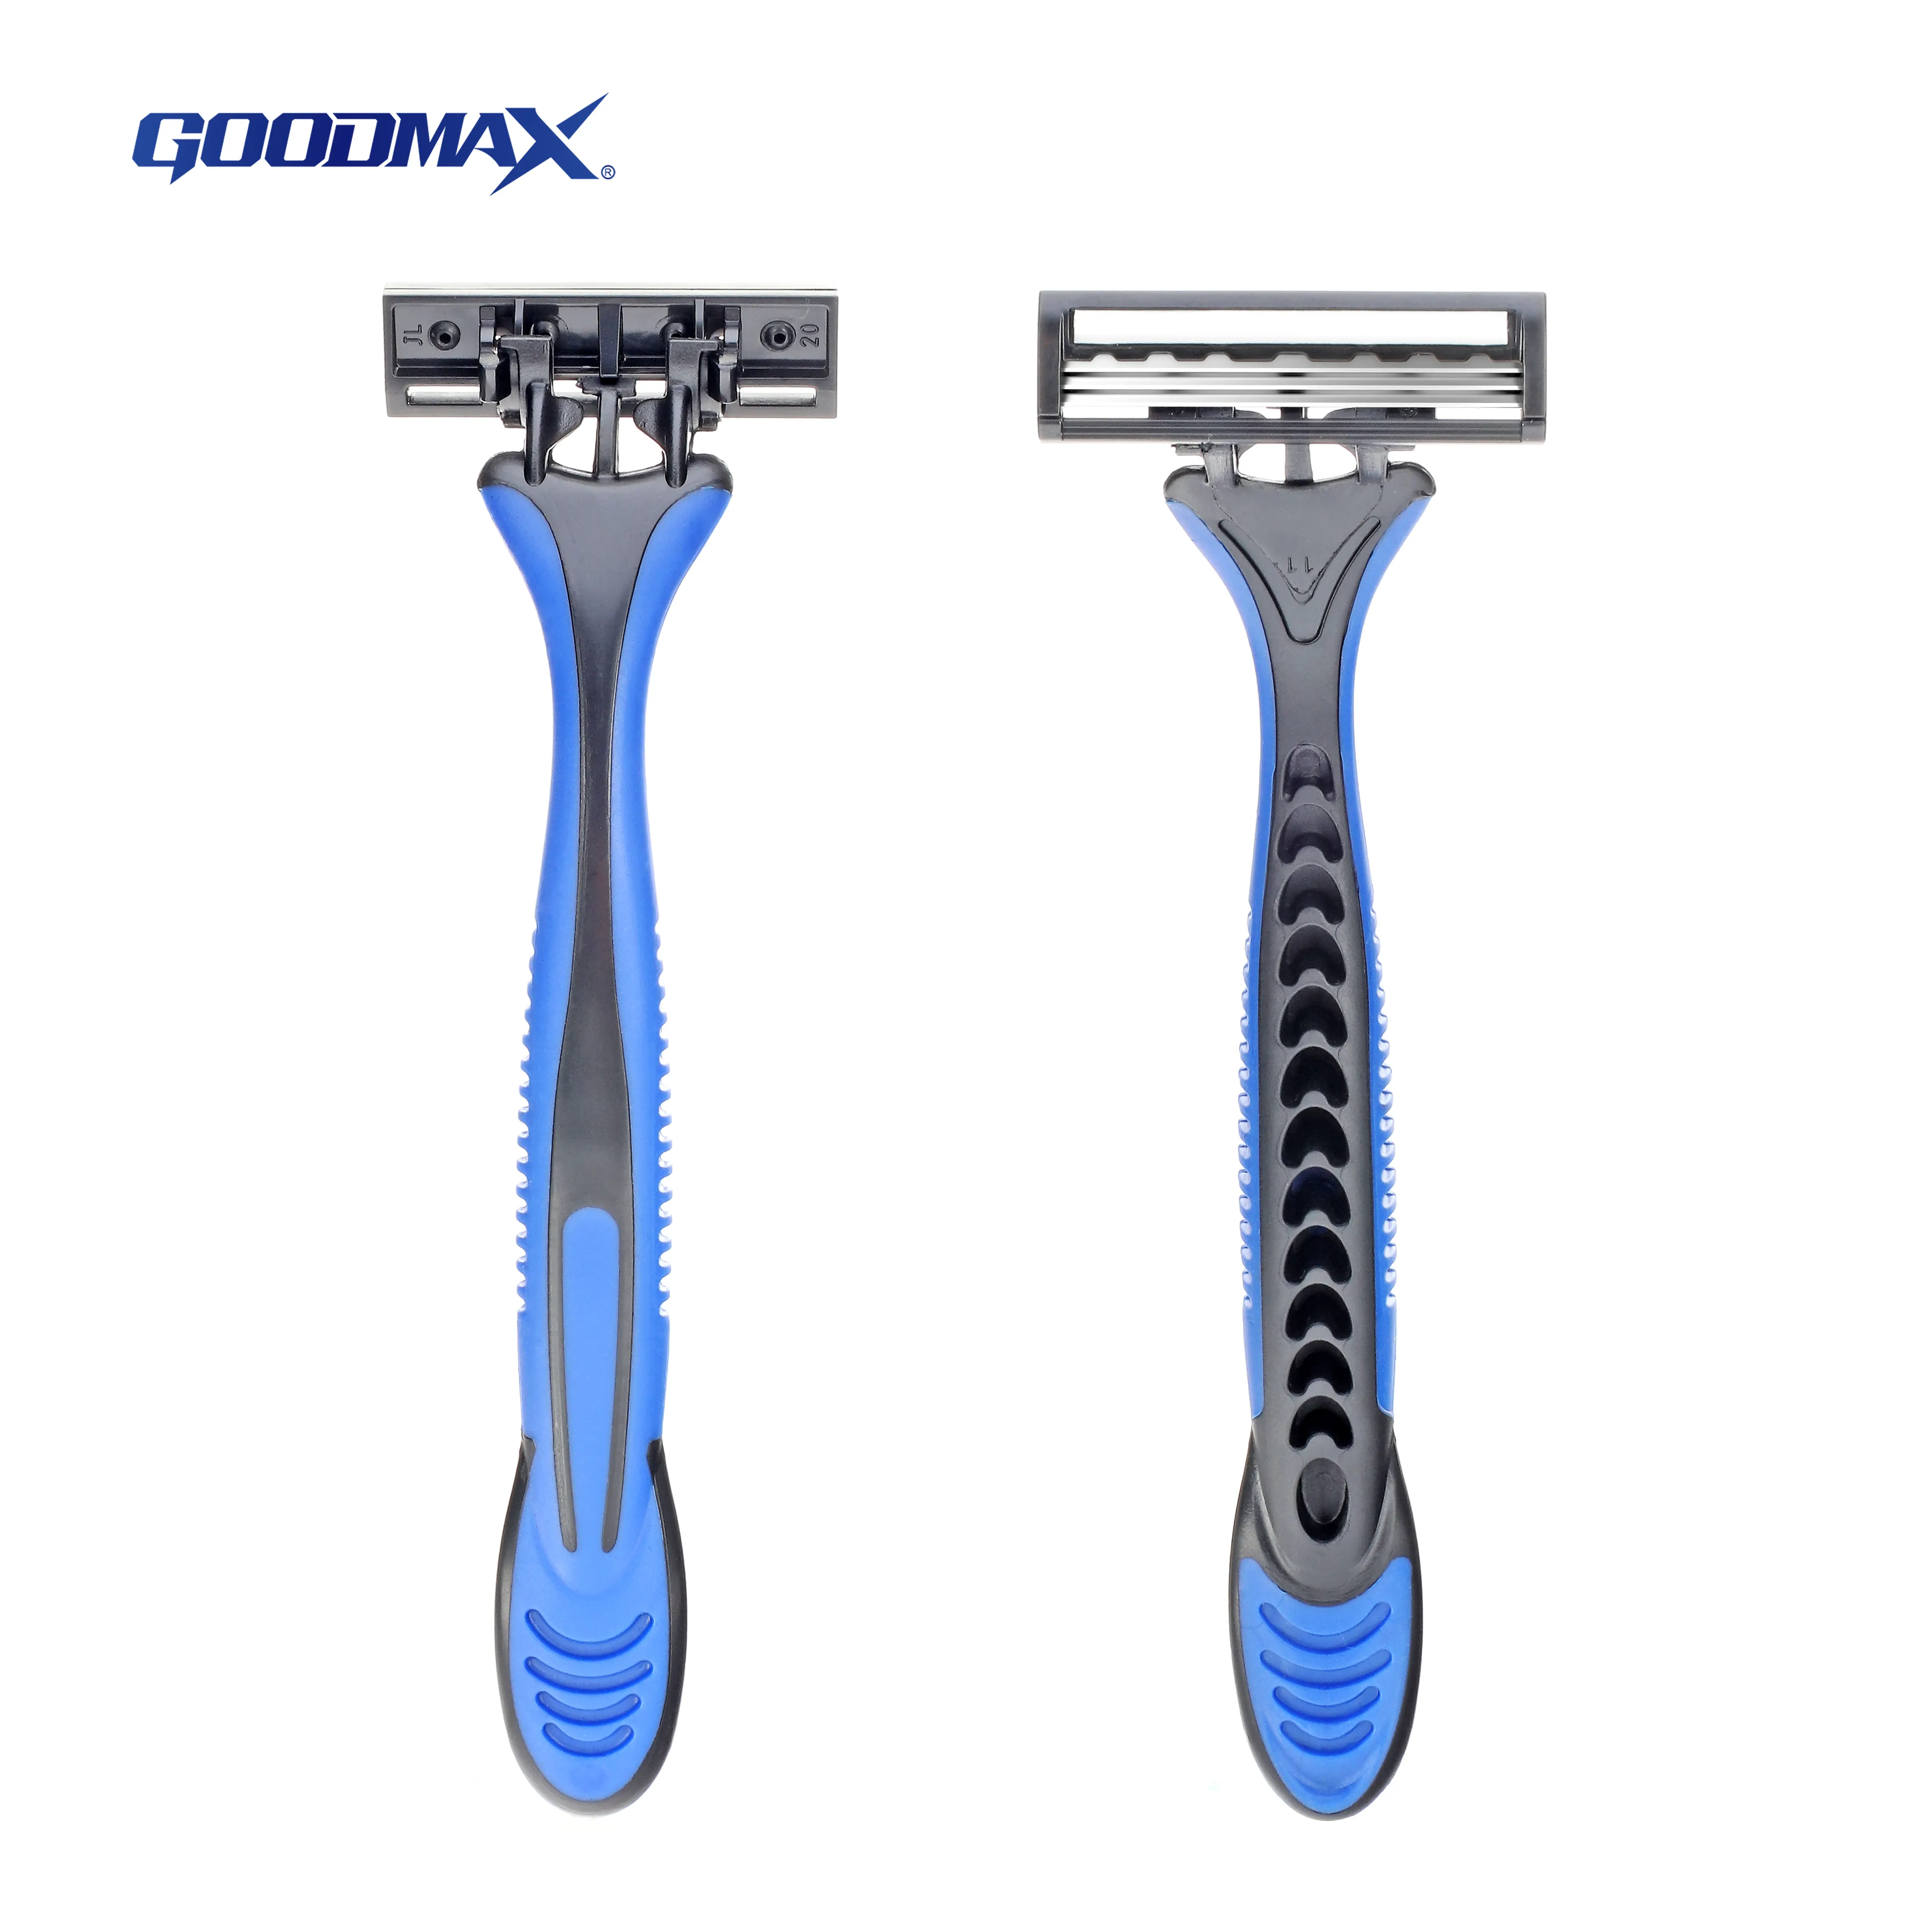 Высококачественная швейцарская бритва GoodMax из нержавеющей стали, Мужская безопасная одноразовая бритва для мужчин